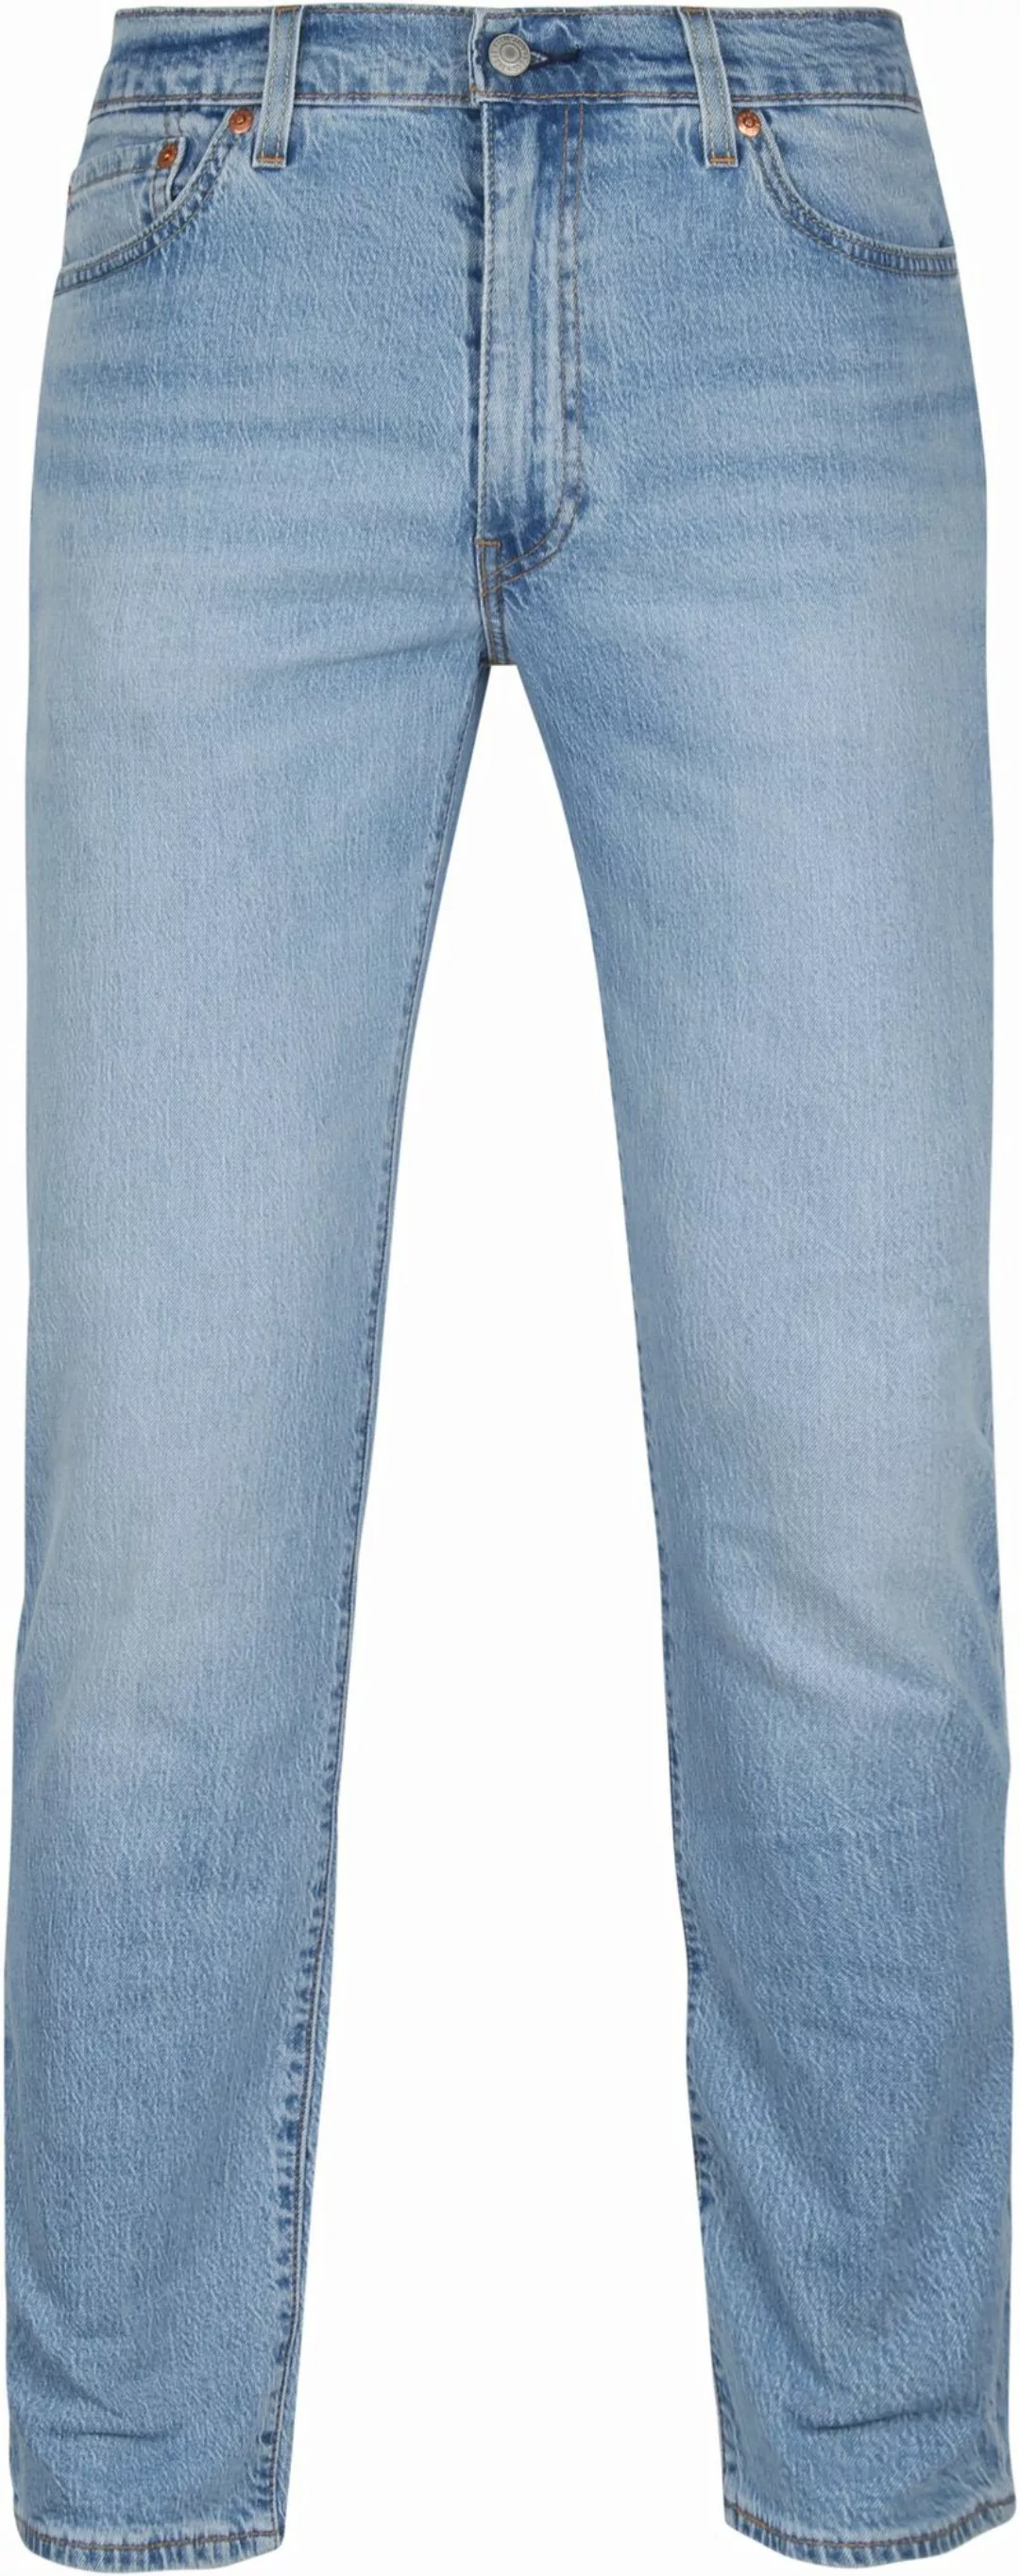 Levi's 511 Jeanshose Blau - Größe W 33 - L 32 günstig online kaufen